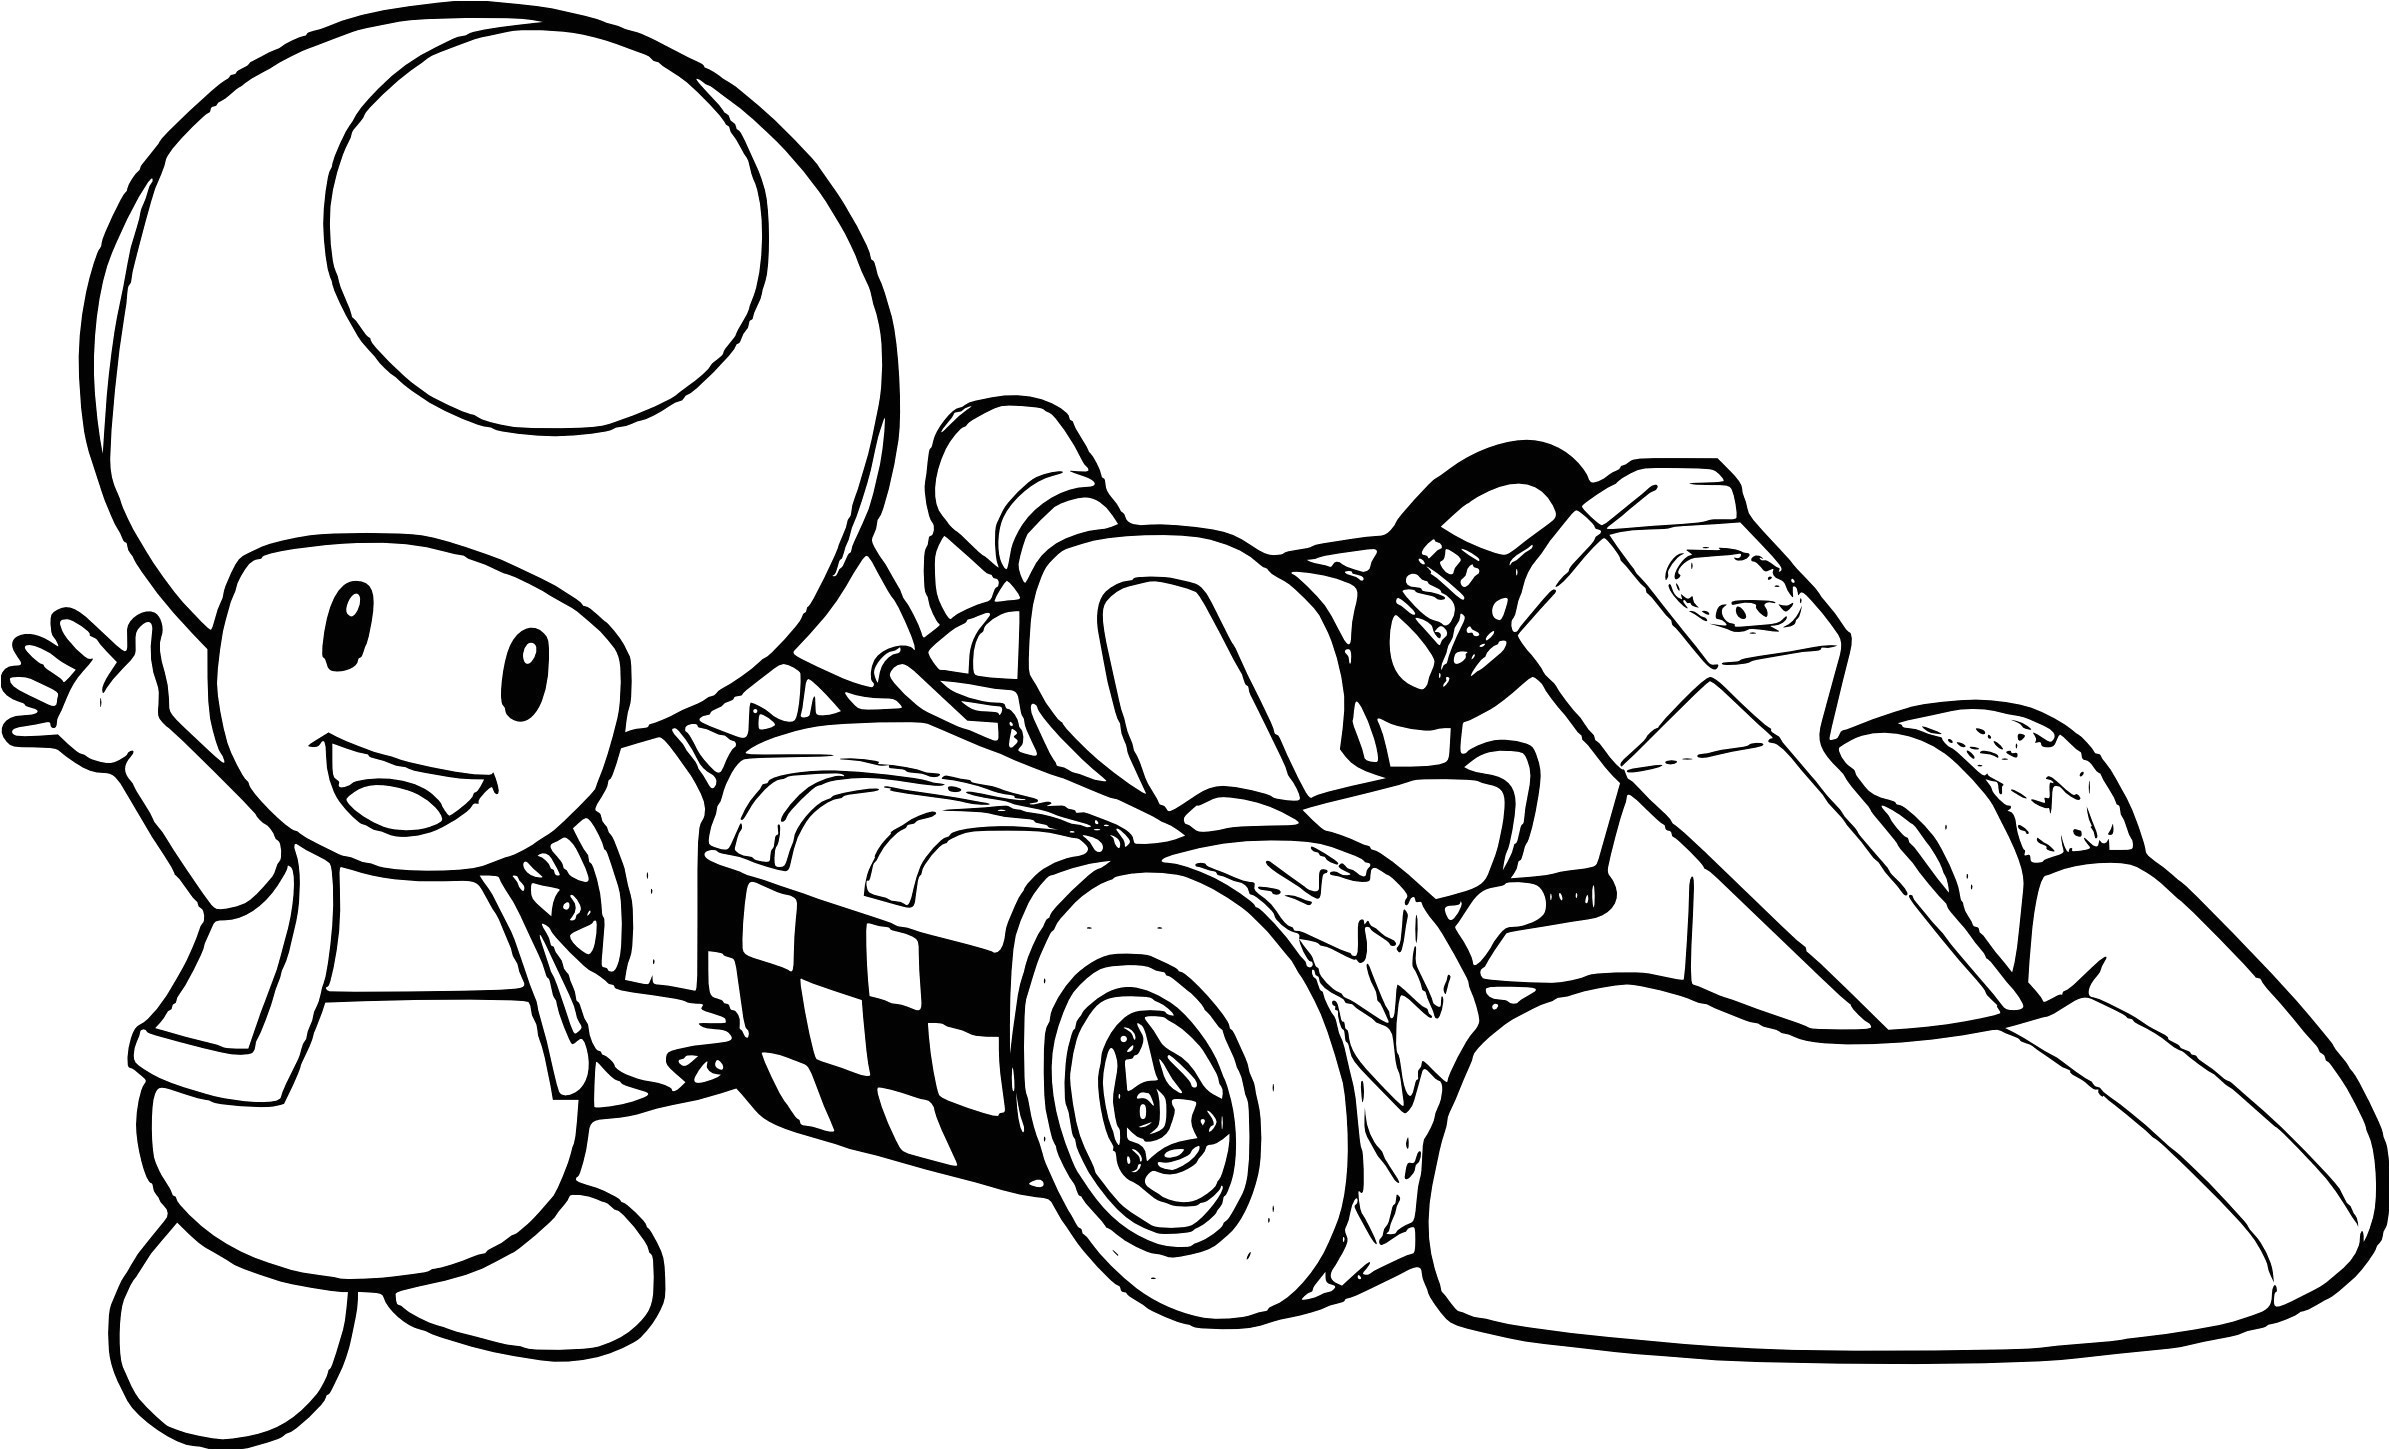 coloriage karting frais coloriage super smash bros einzigartig jeux hugo l escargot of coloriage karting